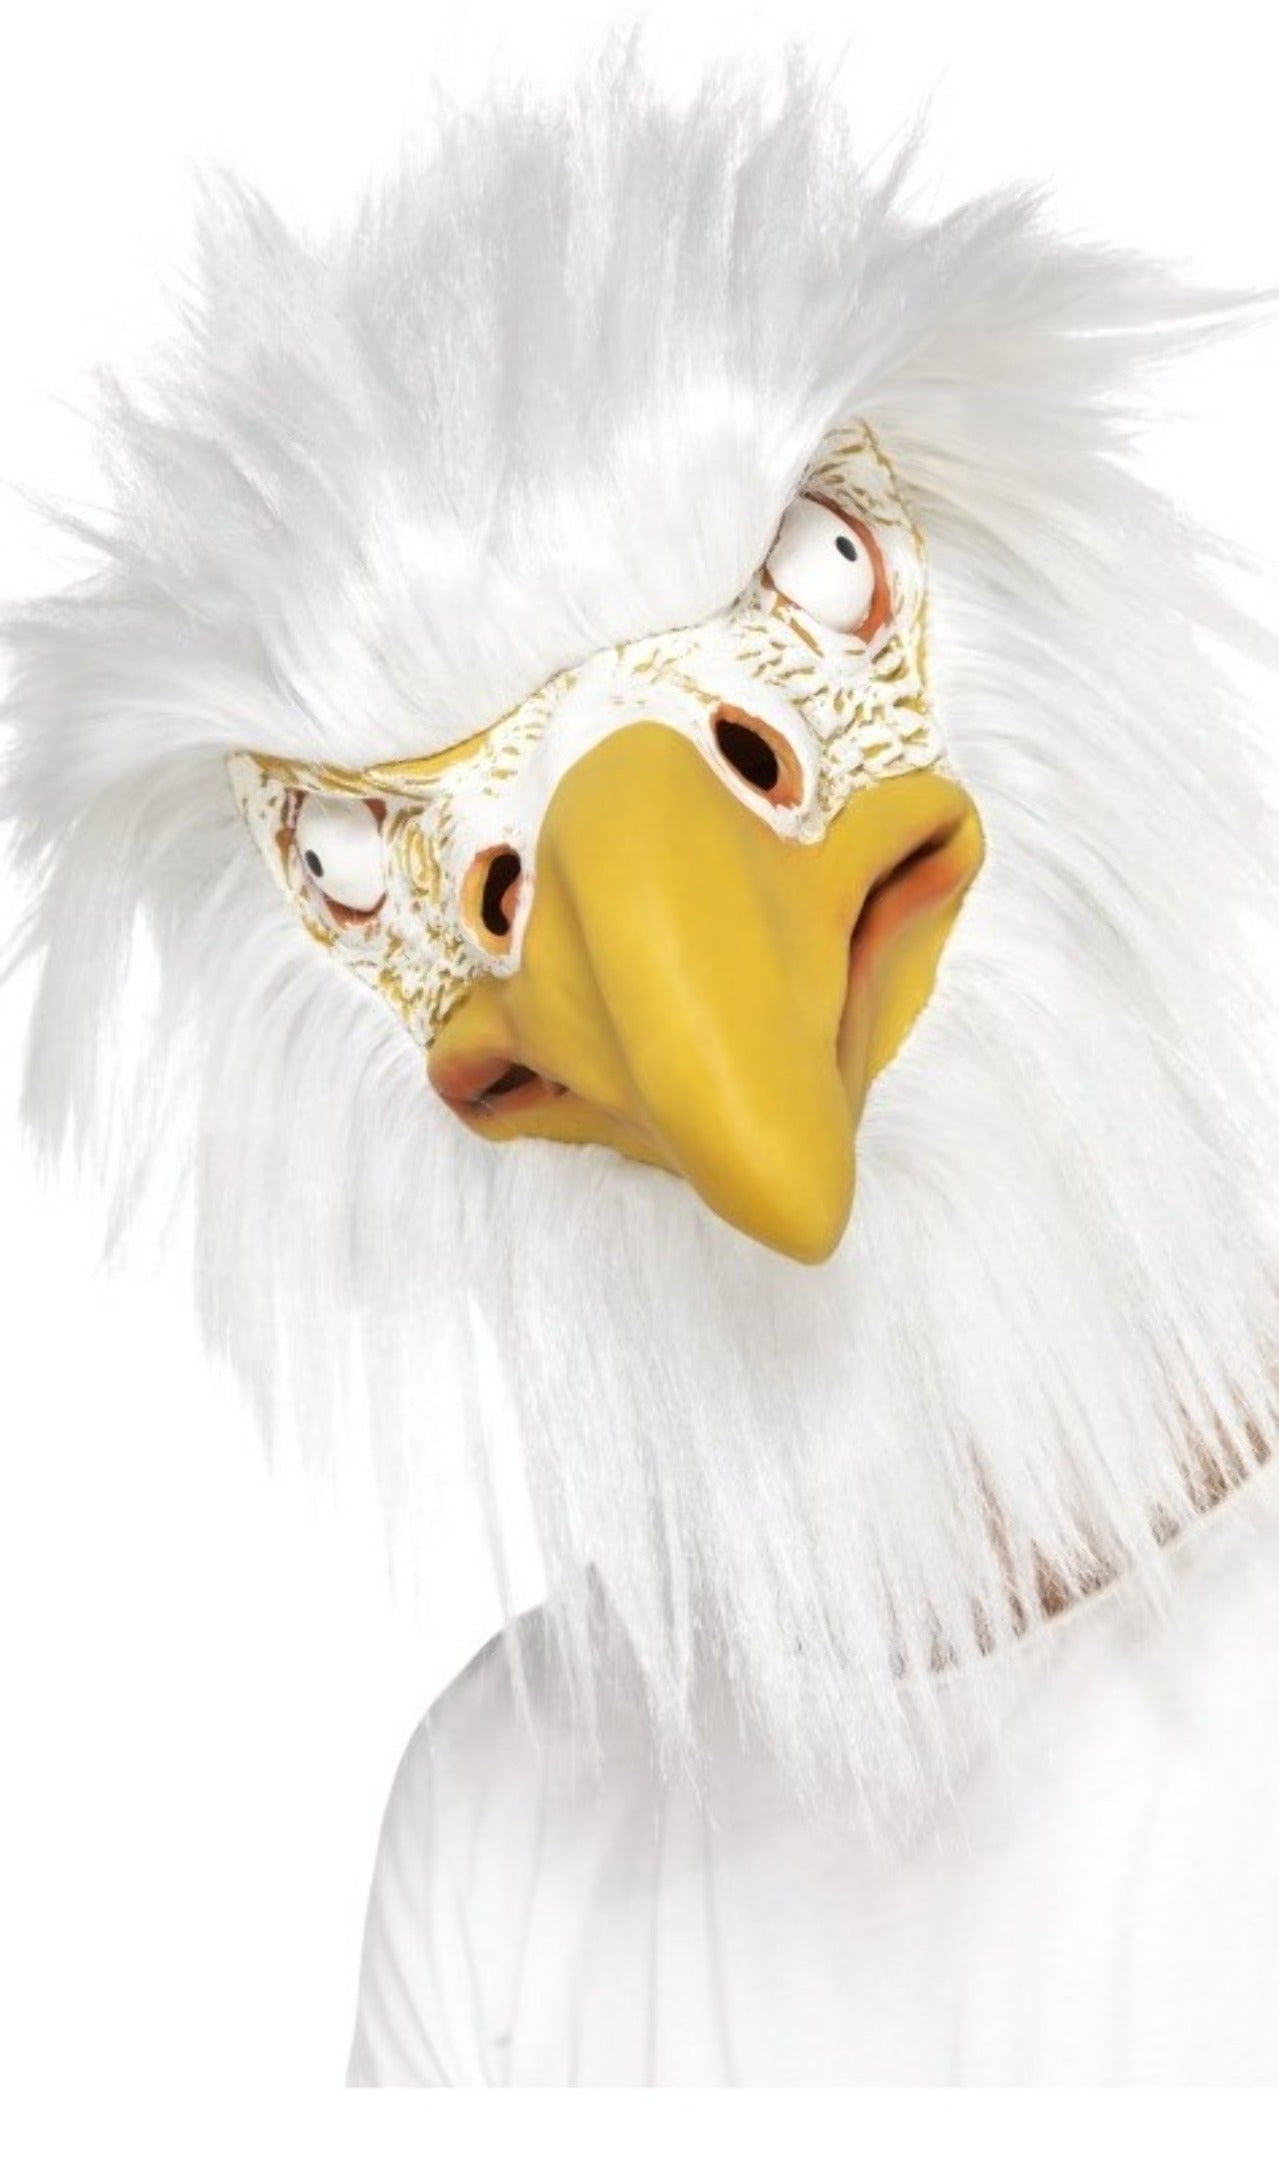 Weiße Adler Maske aus Latex